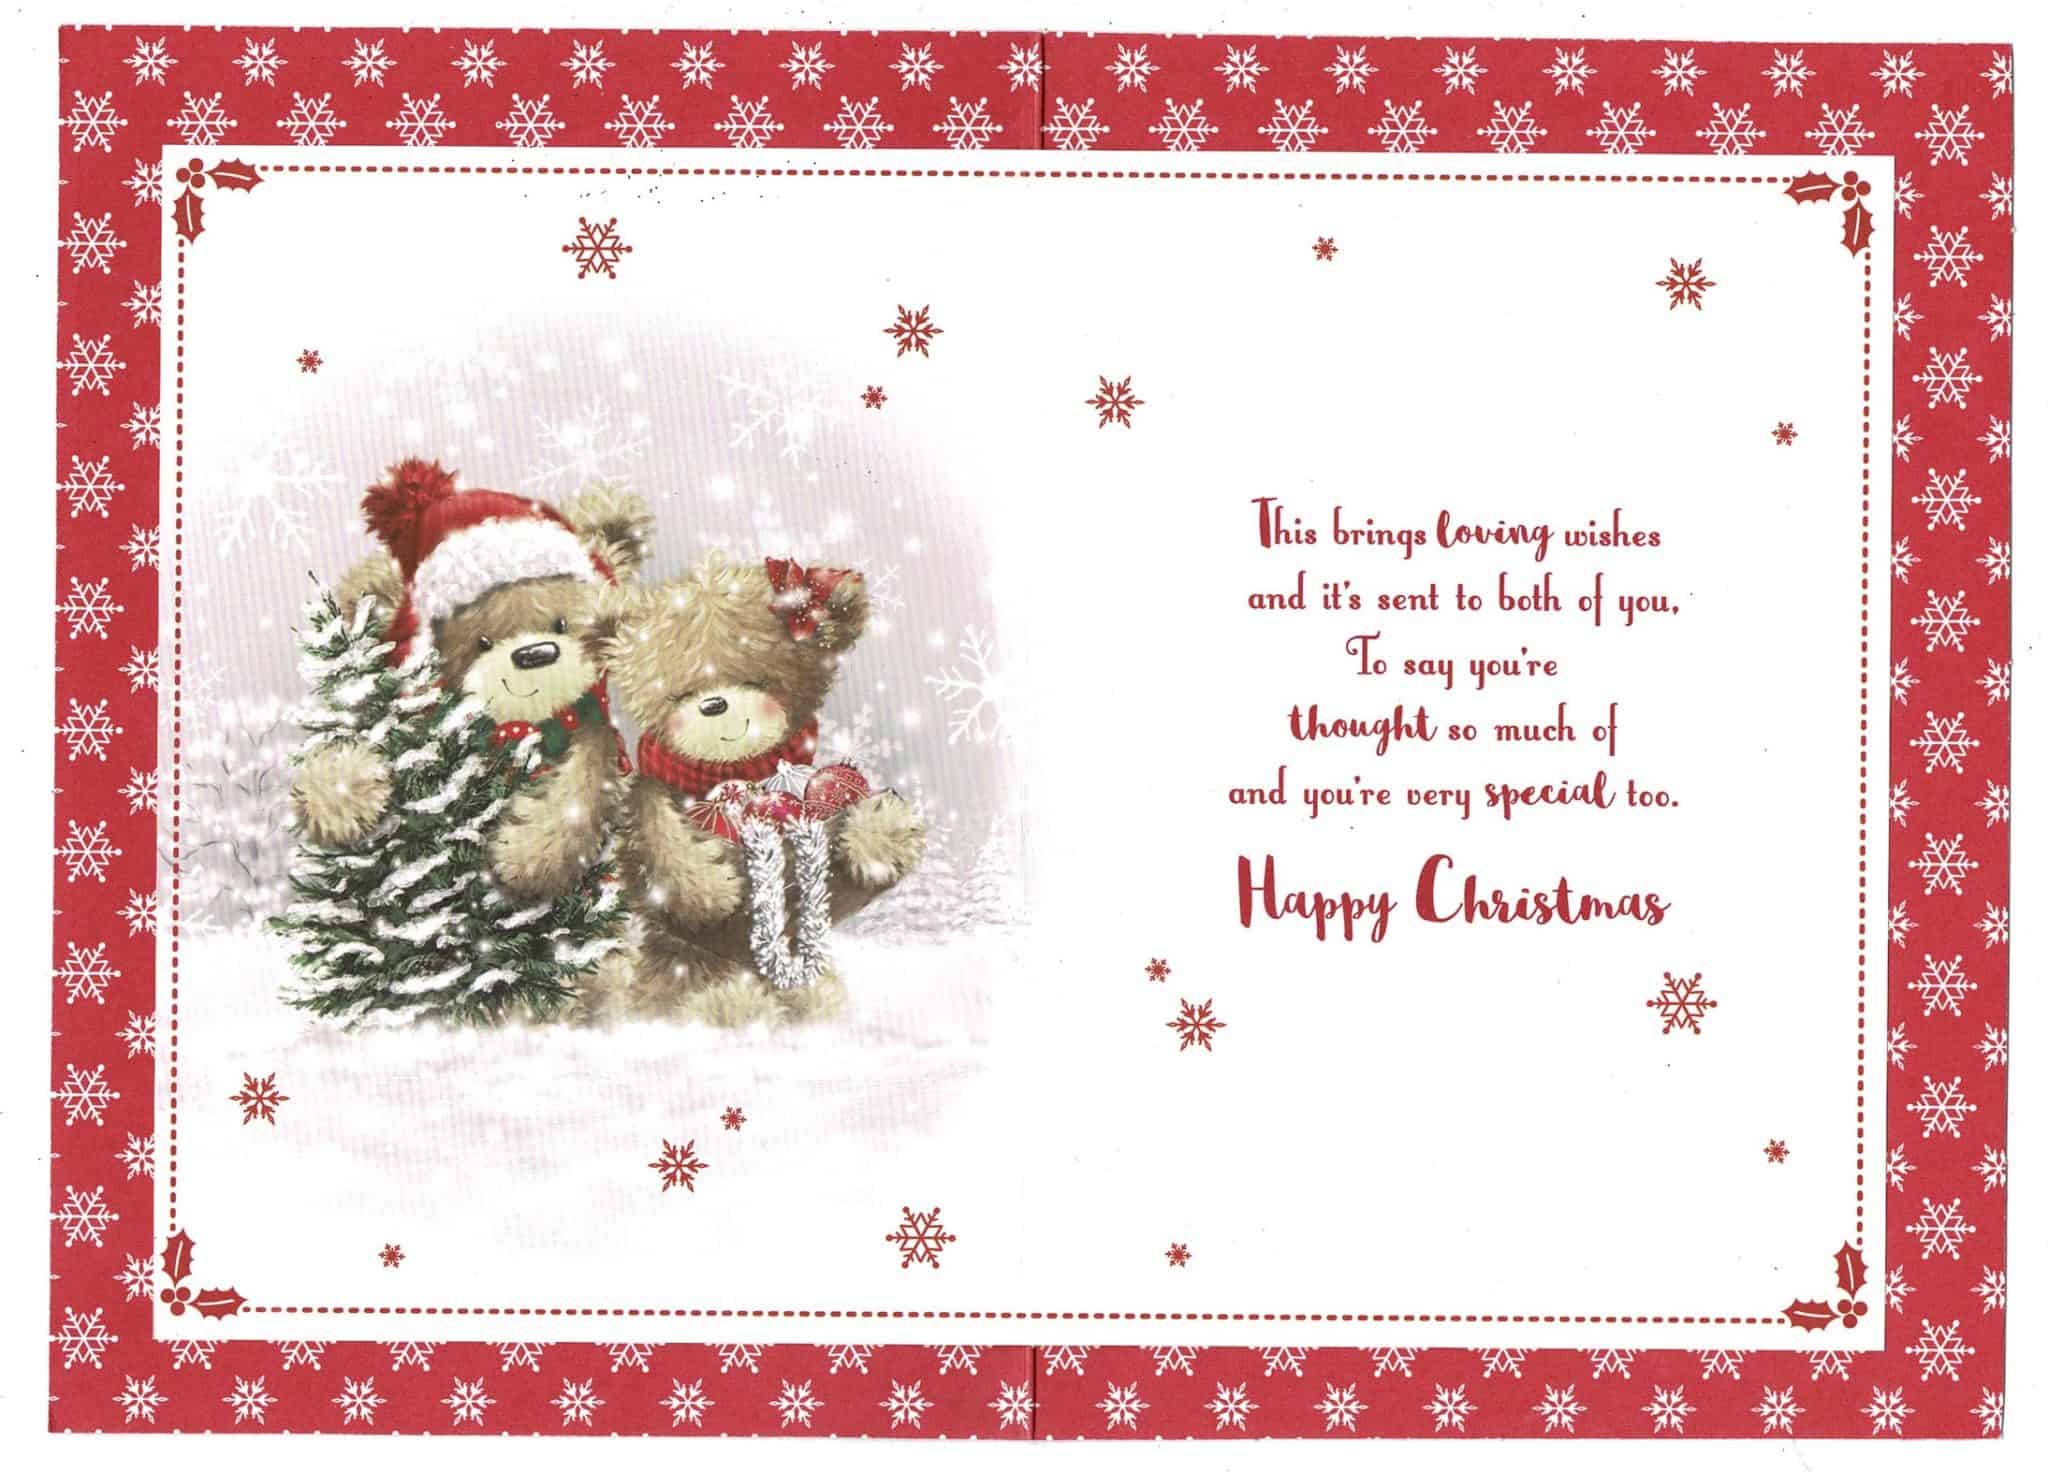 Free Printable Christmas Cards For Sister